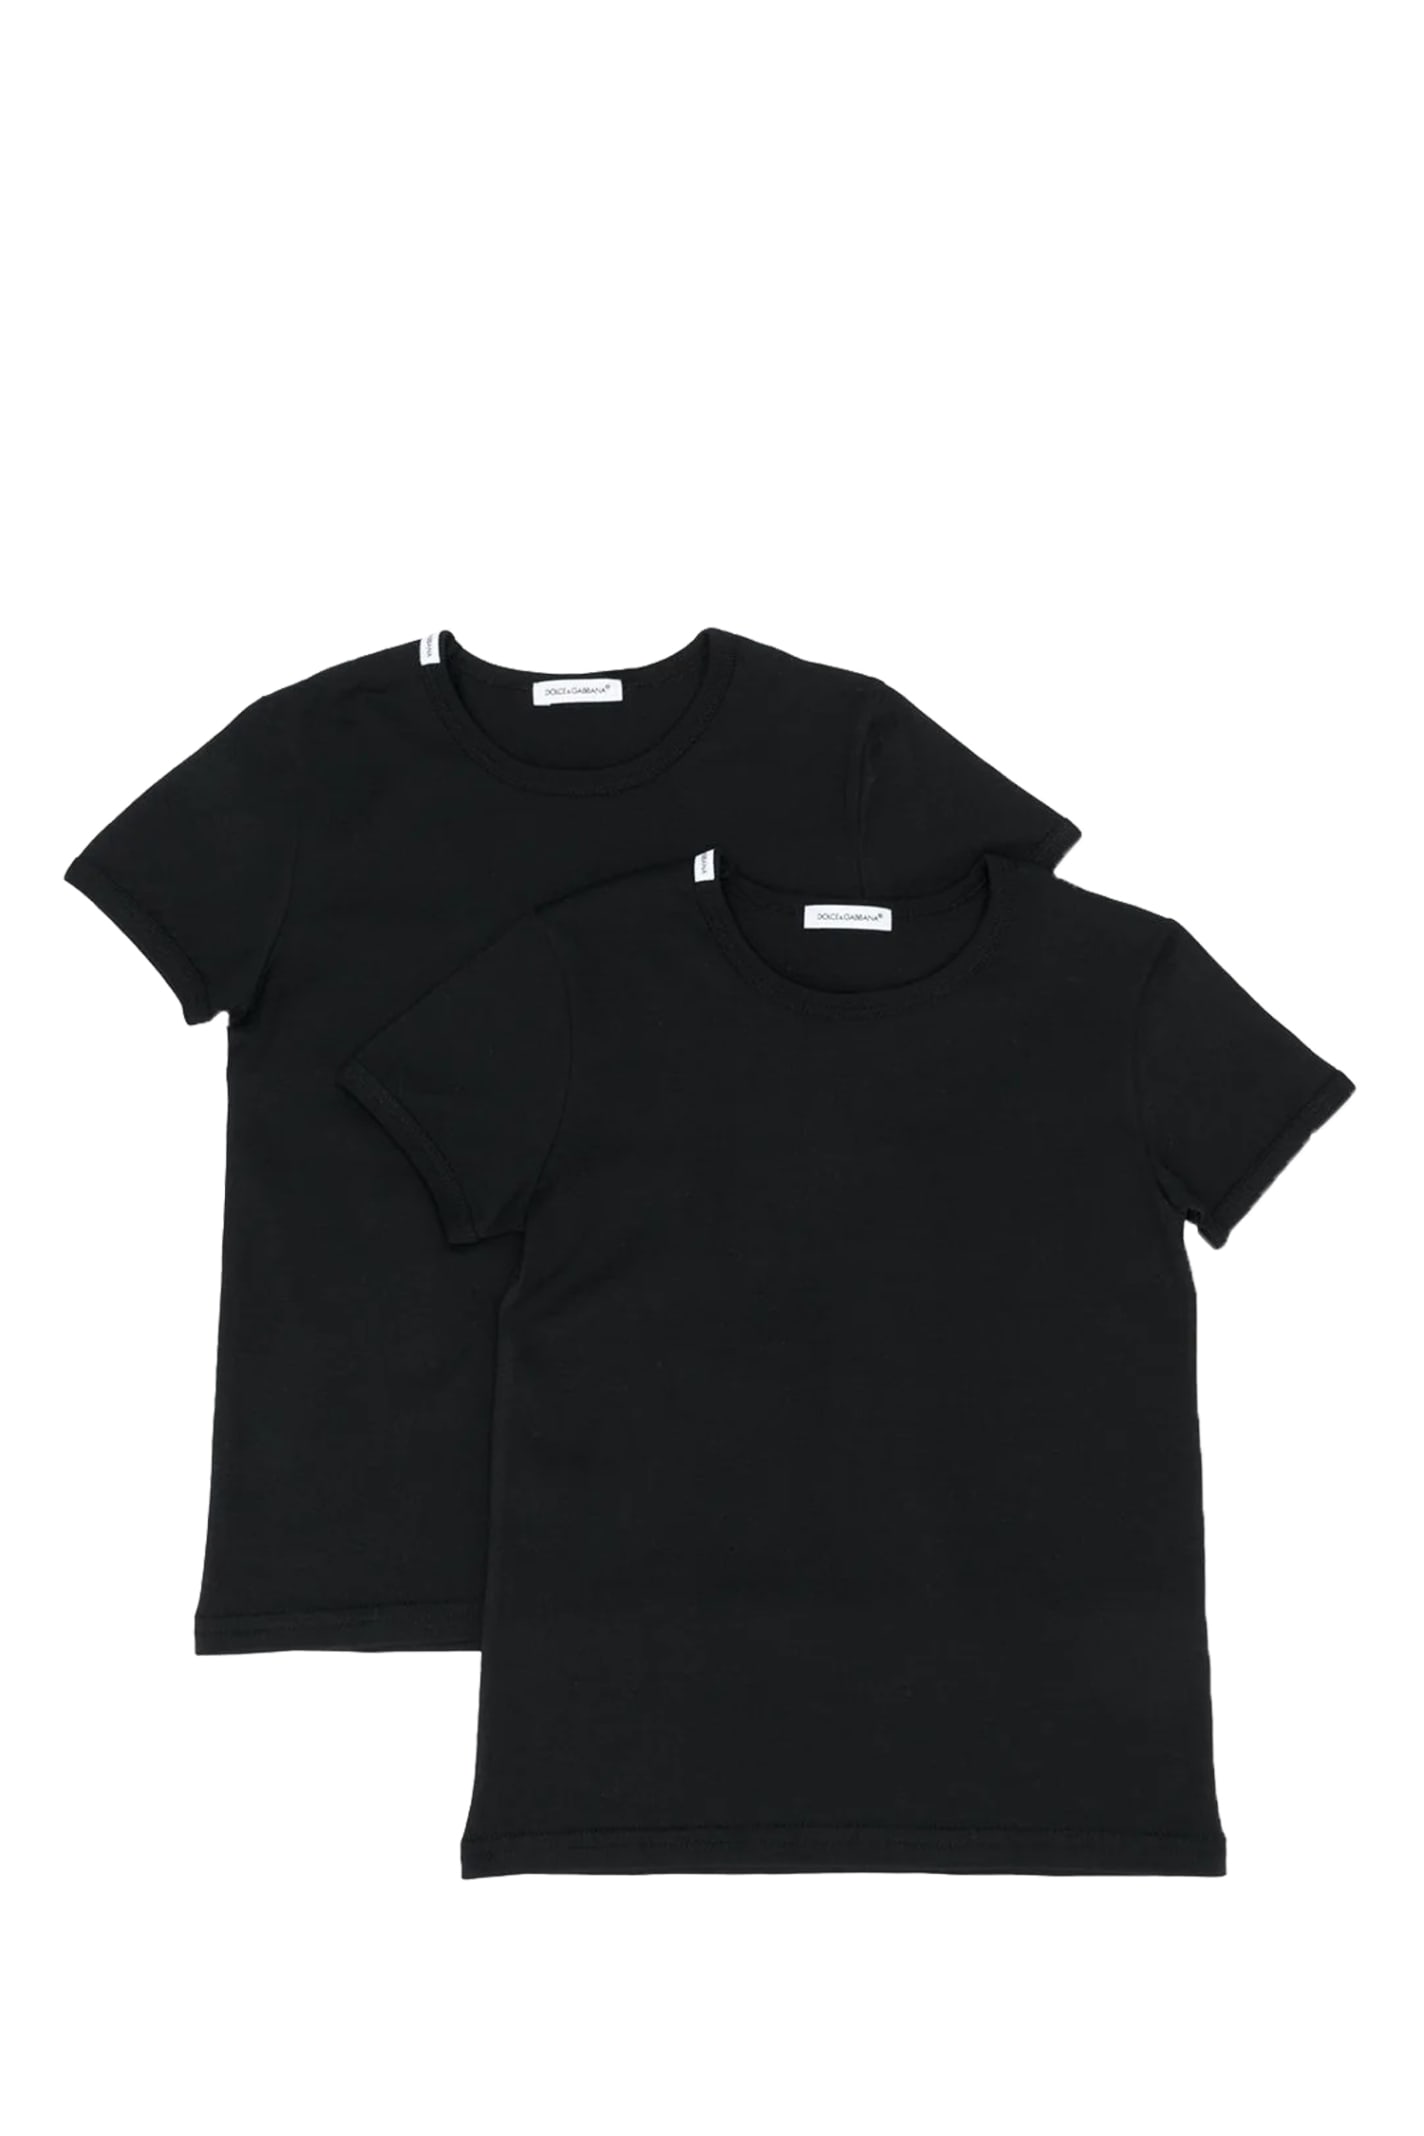 Dolce & Gabbana T-shirt Kit